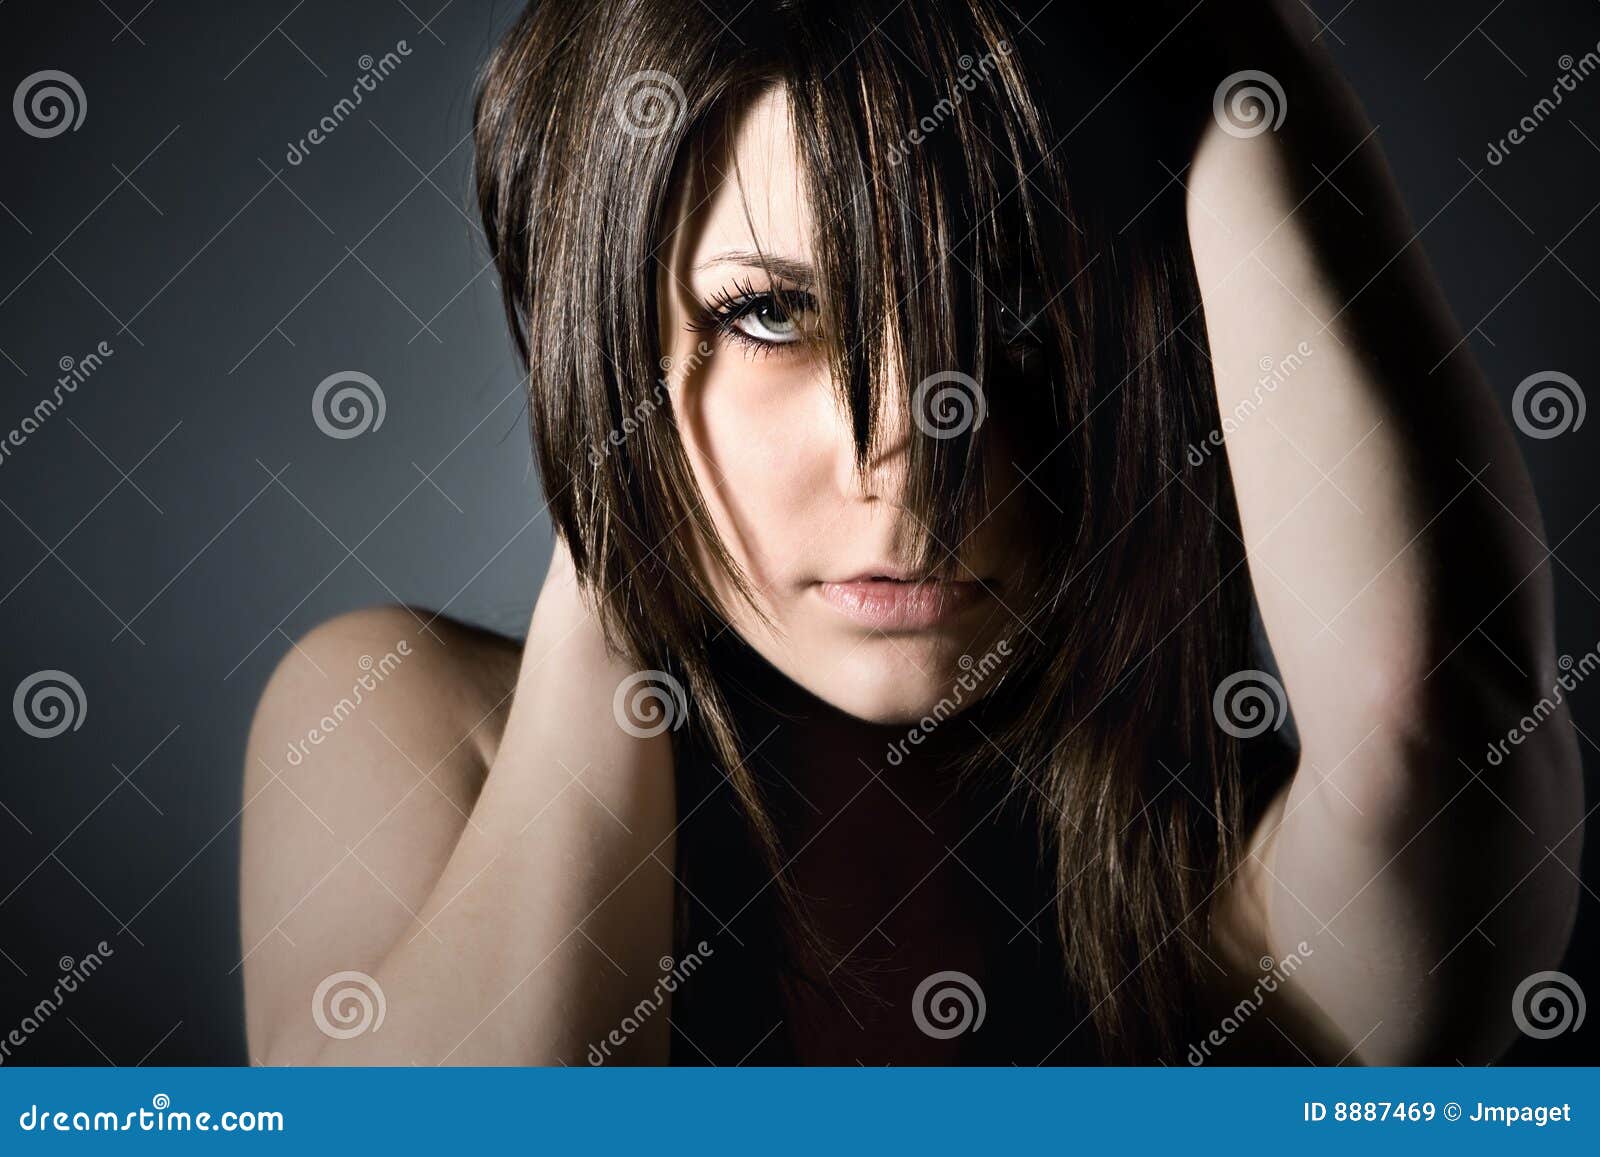 Moody Teenager on Grey Background Stock Image - Image of emotion ...